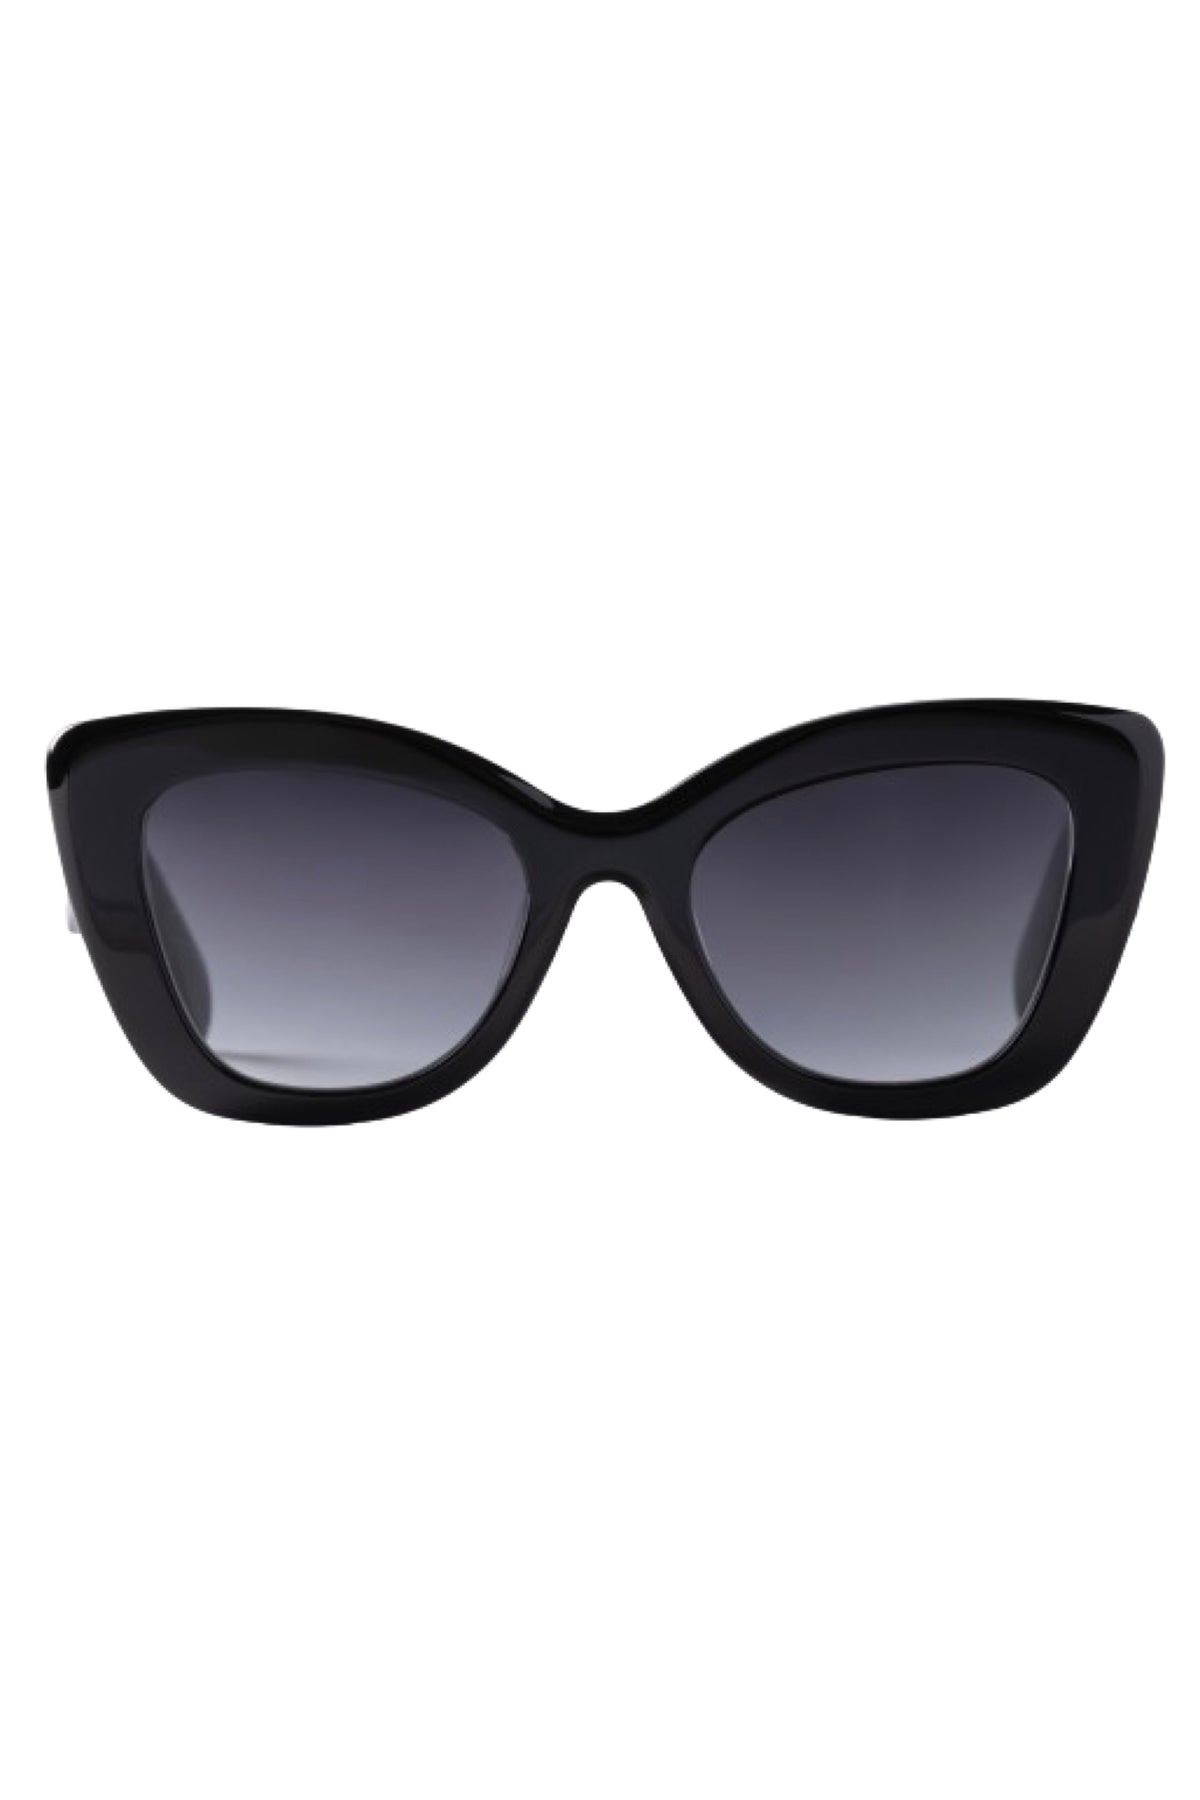 Poosé Noir Sunglasses